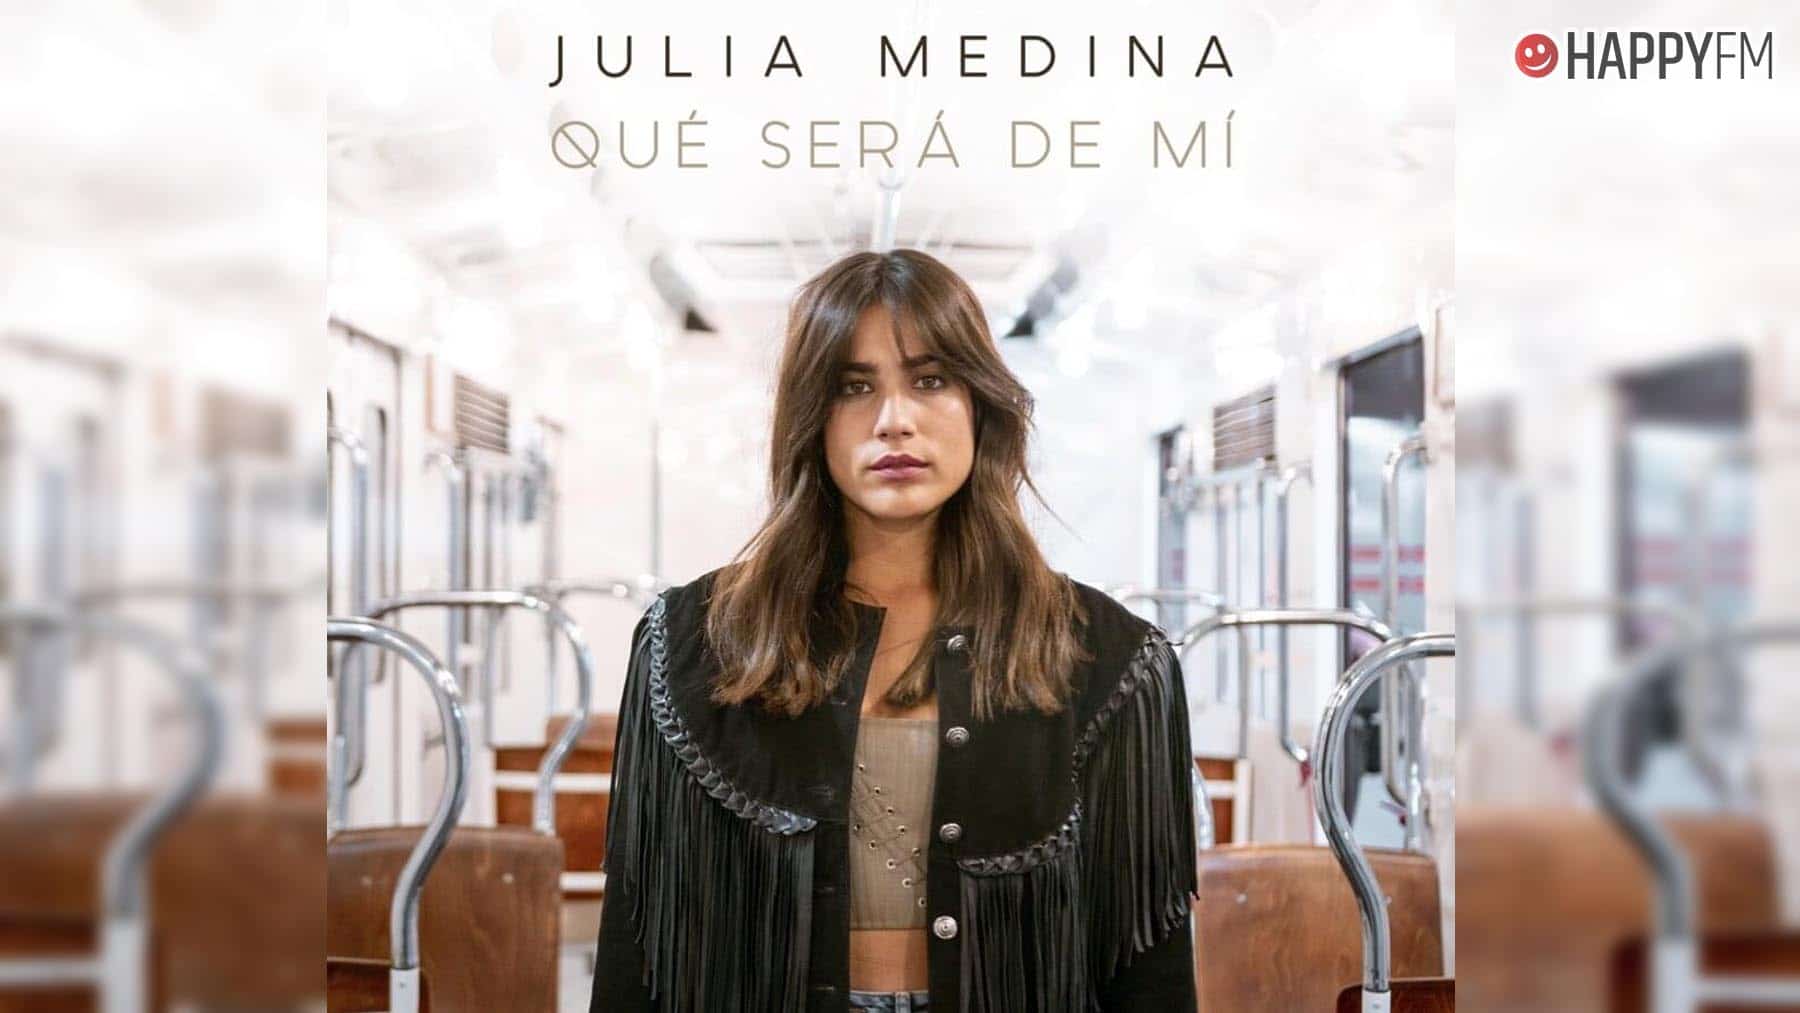 ‘Qué será de mí’, de Julia Medina: letra y vídeo